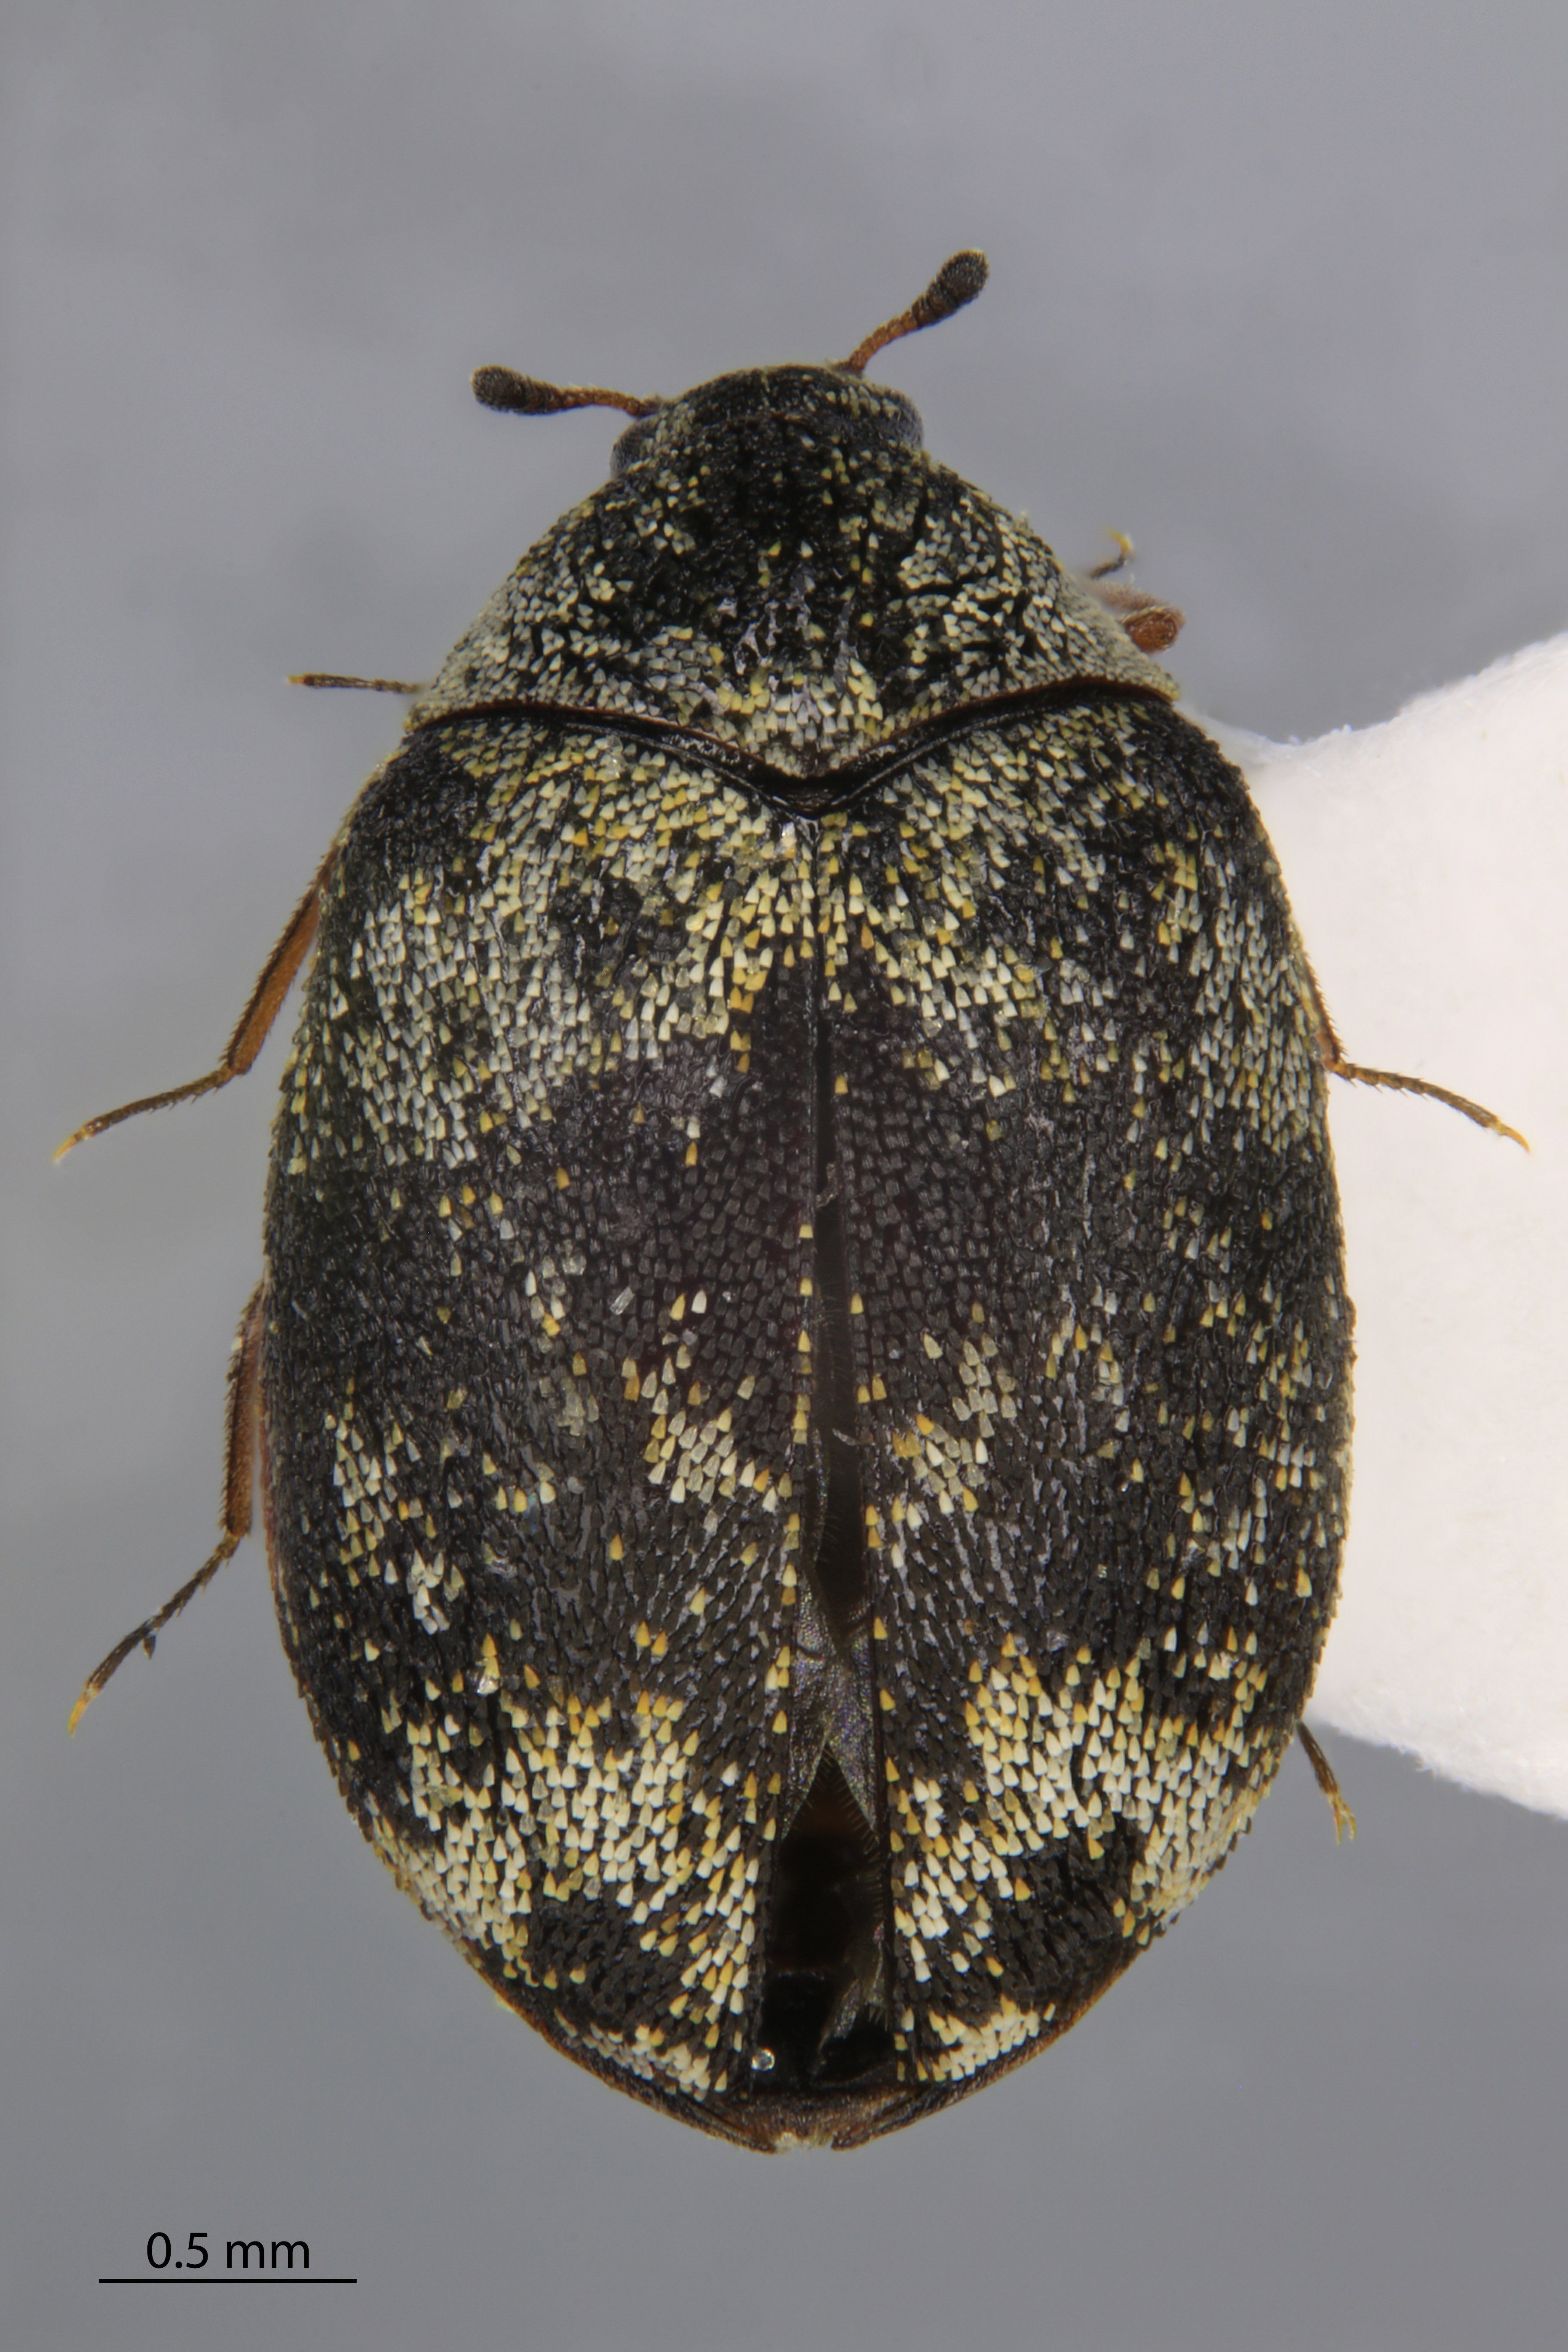 Specimen of a Guernsey Carpet Beetle